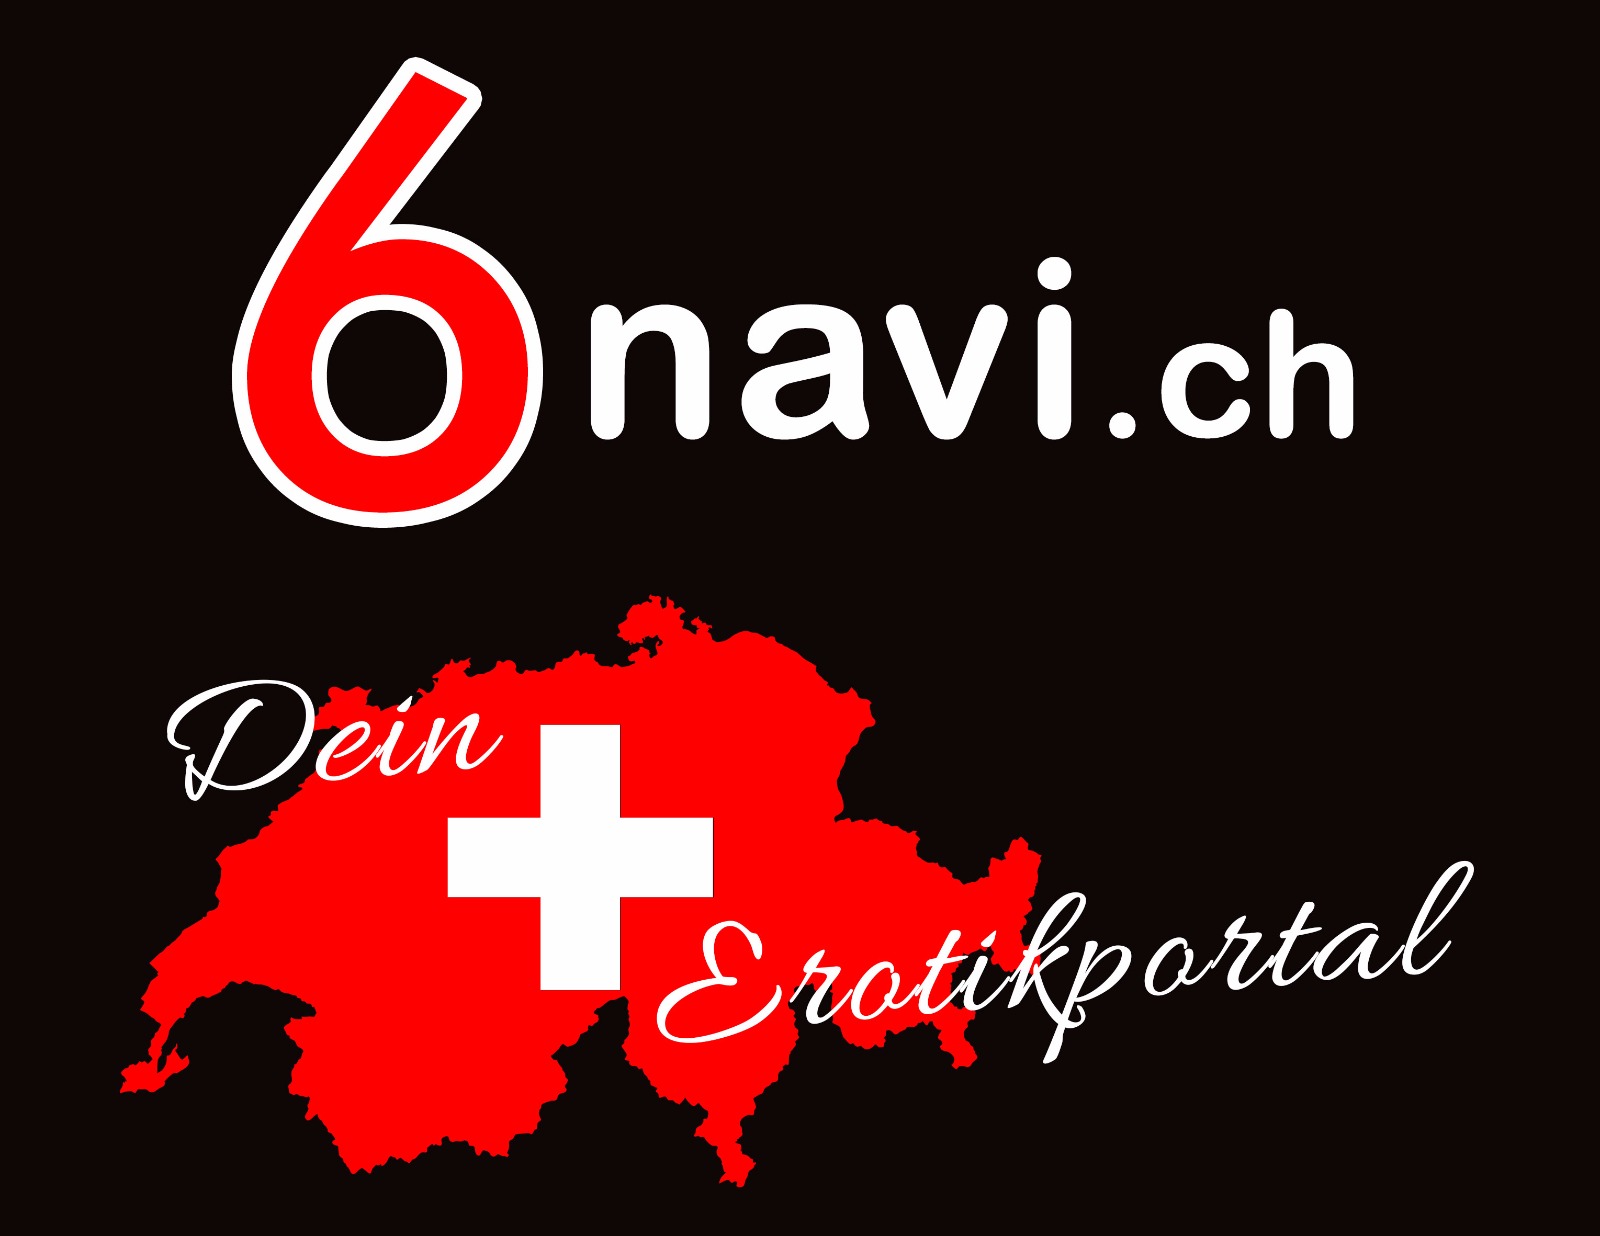 Wir setzen auf die Zusammenarbeit mit dem neuen Starken Werbe-Partner www.6navi.ch ! 